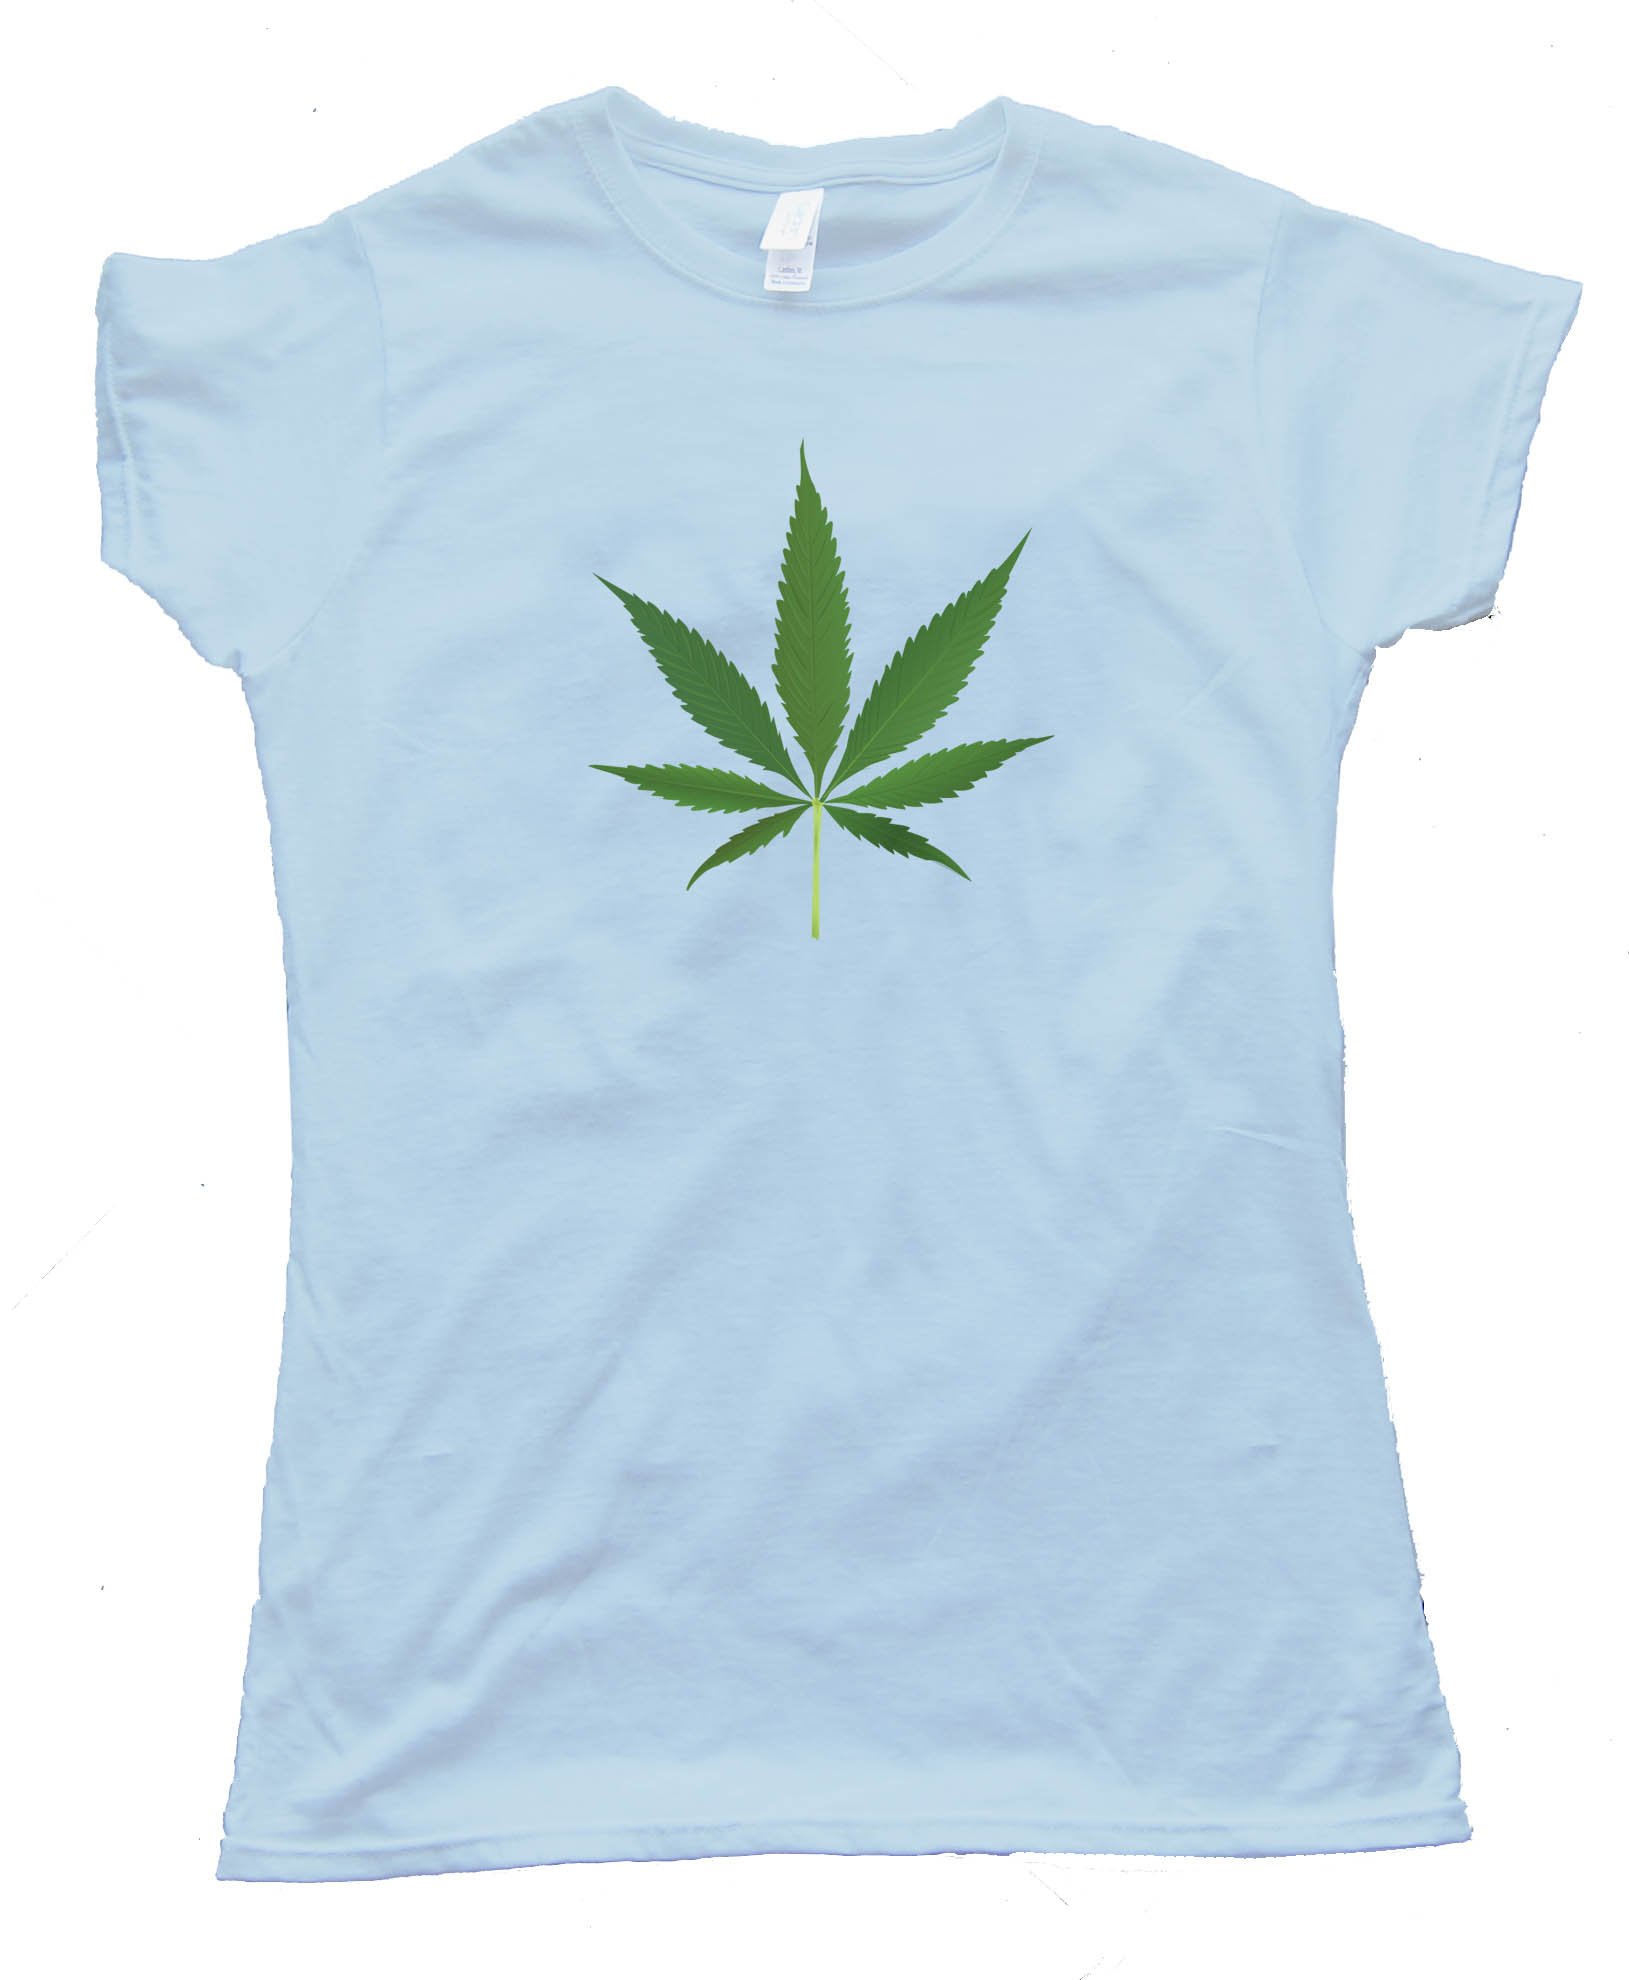 Womens Big Marijuana Leaf Pot Weed Tee Shirt